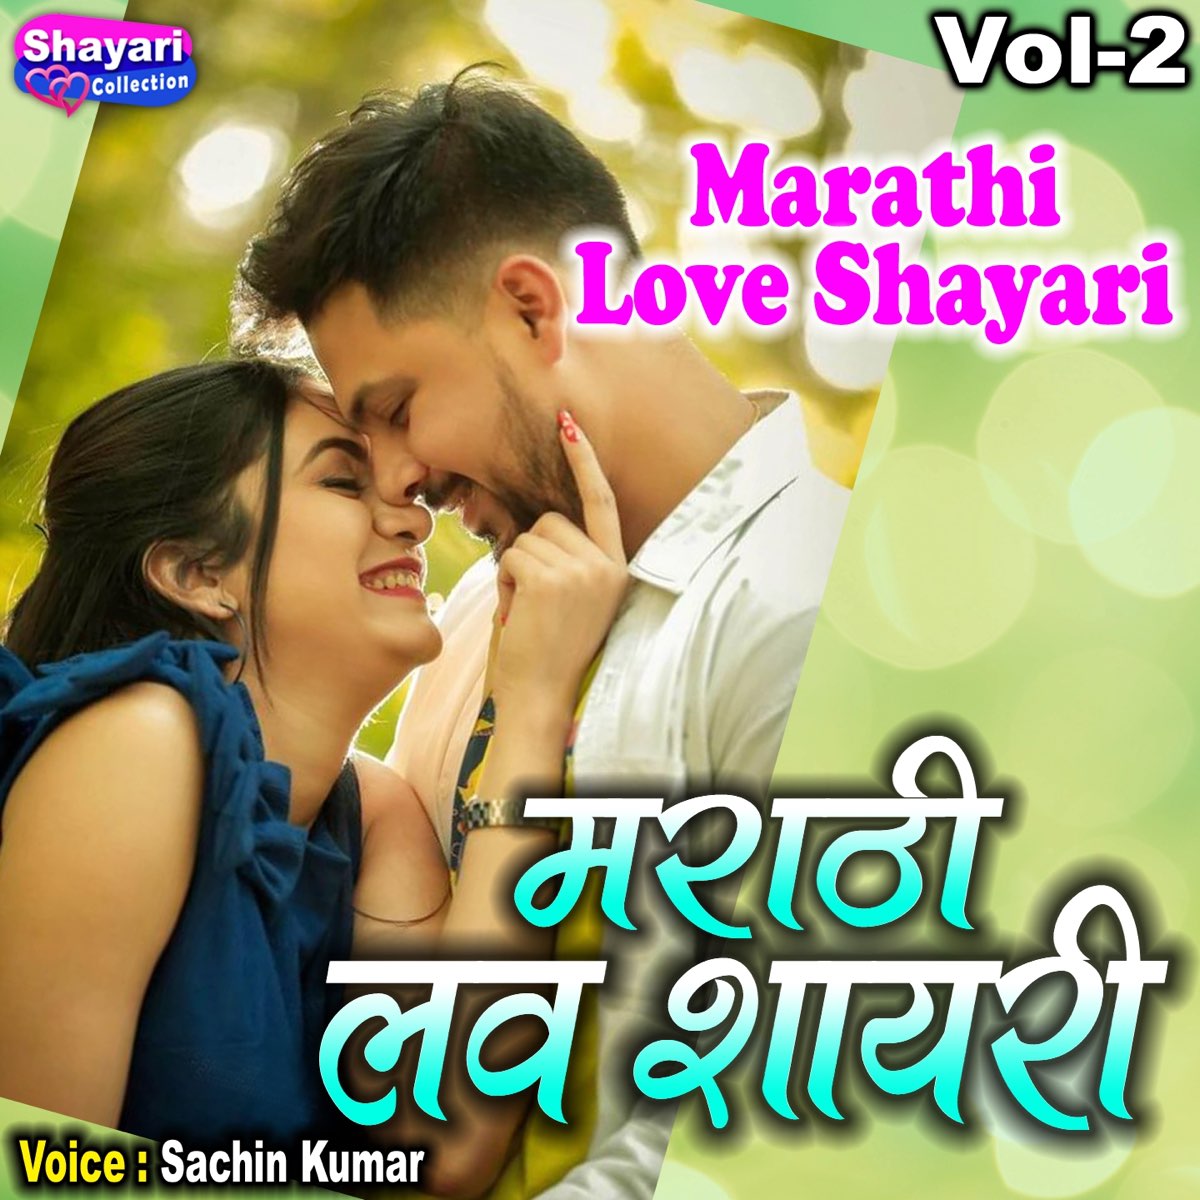 Marathi Love Shayari, Vol. 2 - Single by Sachin Kumar on Apple Music